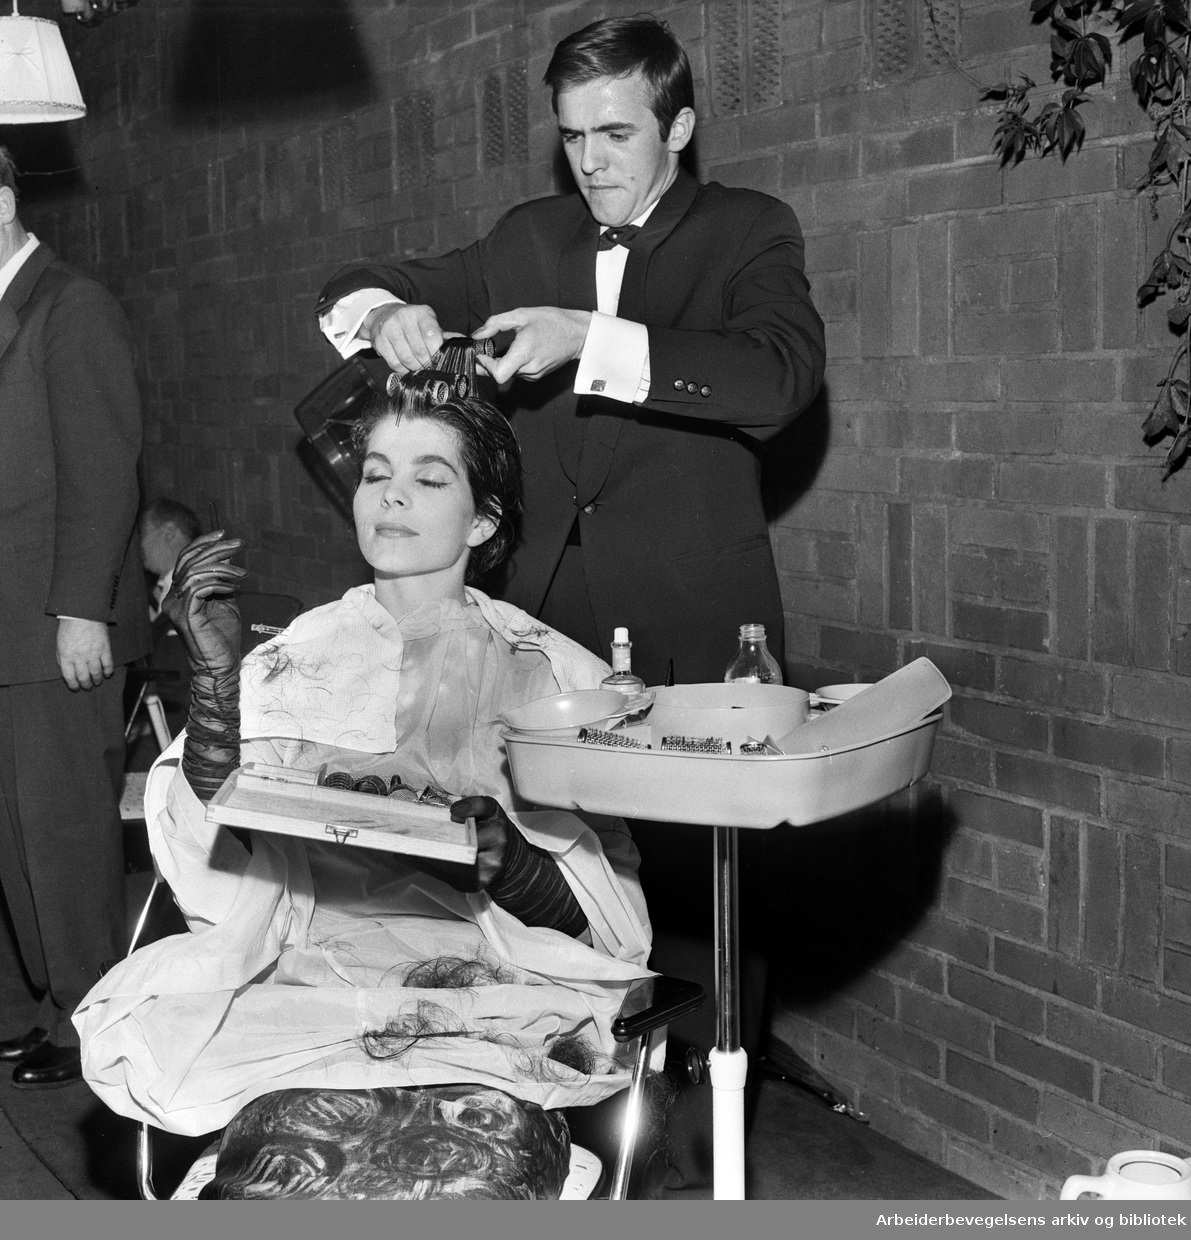 Den tyske frisøren Bernd Pawlowski lager en "Jackie-frisyre" på en modell under et arrangement i Ingeniørenes Hus. September 1961.